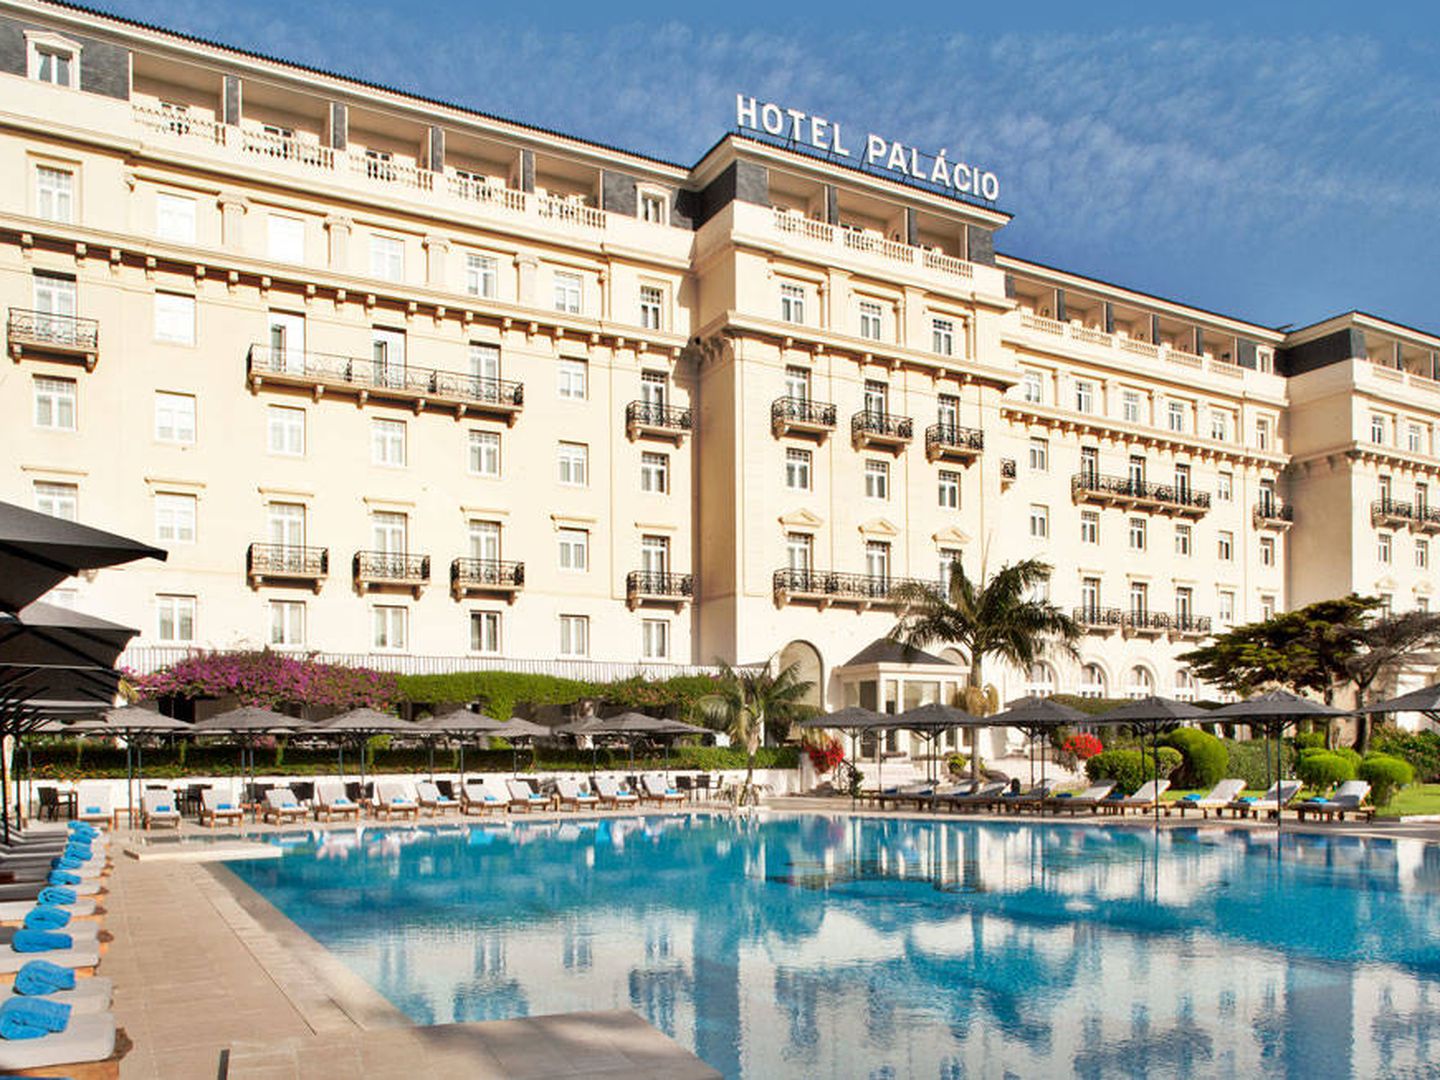  Imagen del Hotel Palacio Estoril.